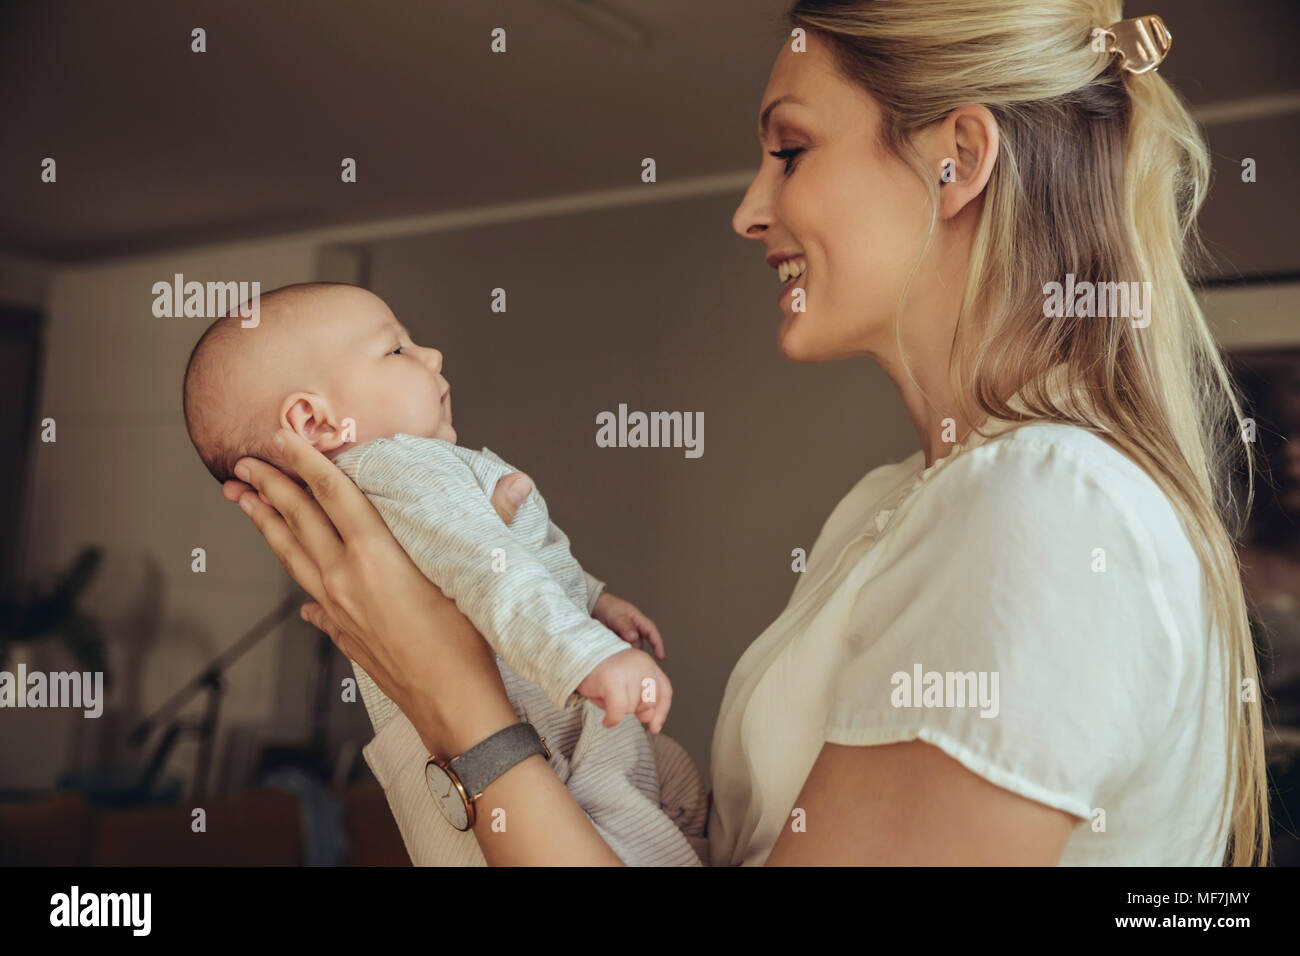 La madre sonríe al hablarle a su bebé recién nacido Foto de stock